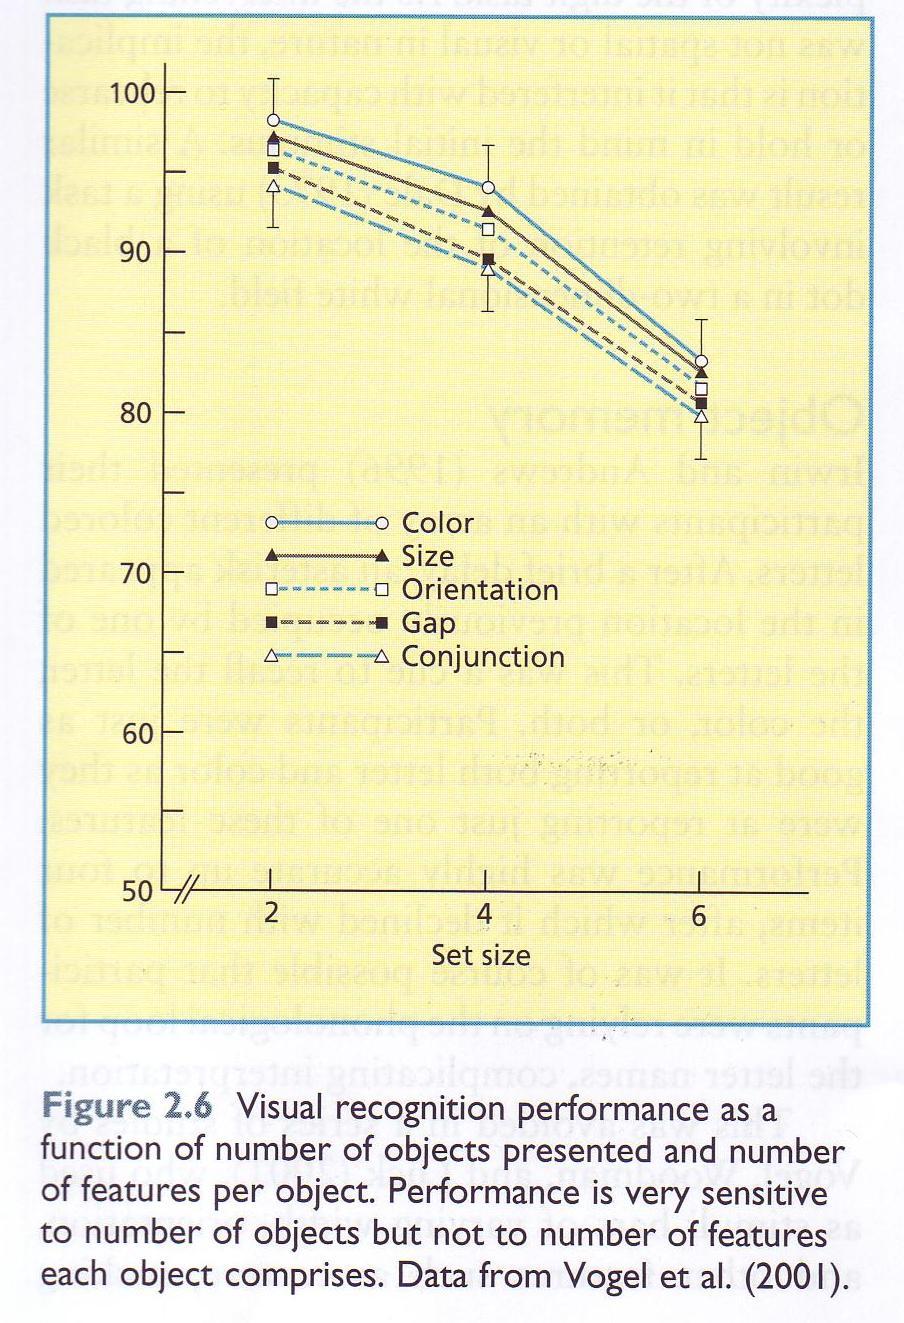 Das visuelle KZG - Vogel, Woodman, & Luck (2001) - Kurze Präsentation mehrerer Balken mit unterschiedlicher Farbe, Dicke, Orientierung und Textur.